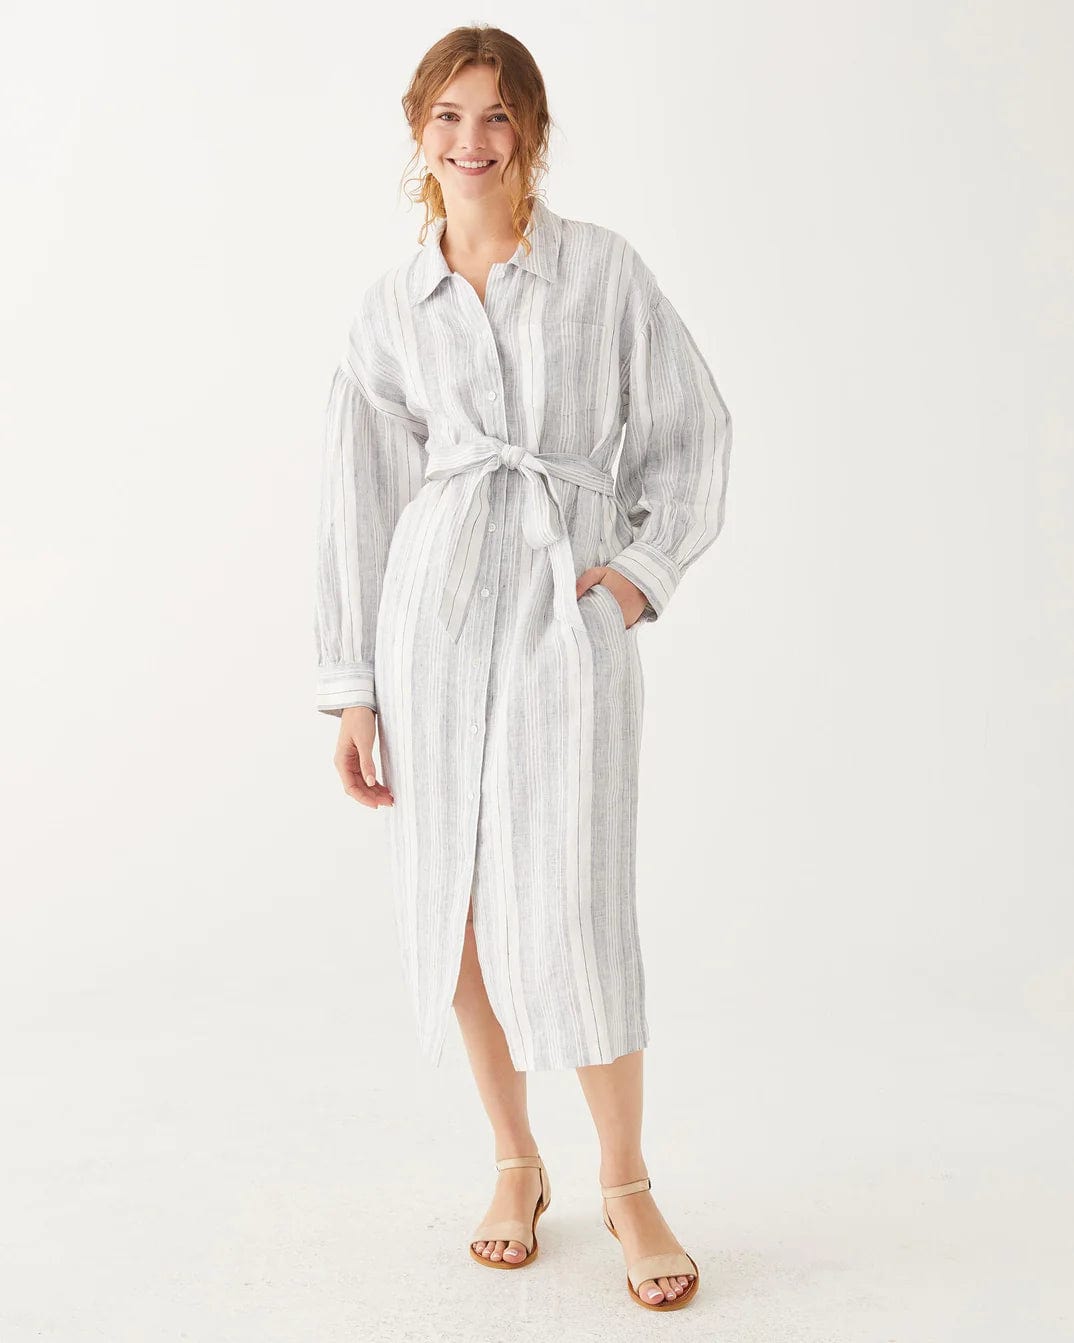 Mersea Women's Dresses Stripe Linen / Small Como Linen Dress